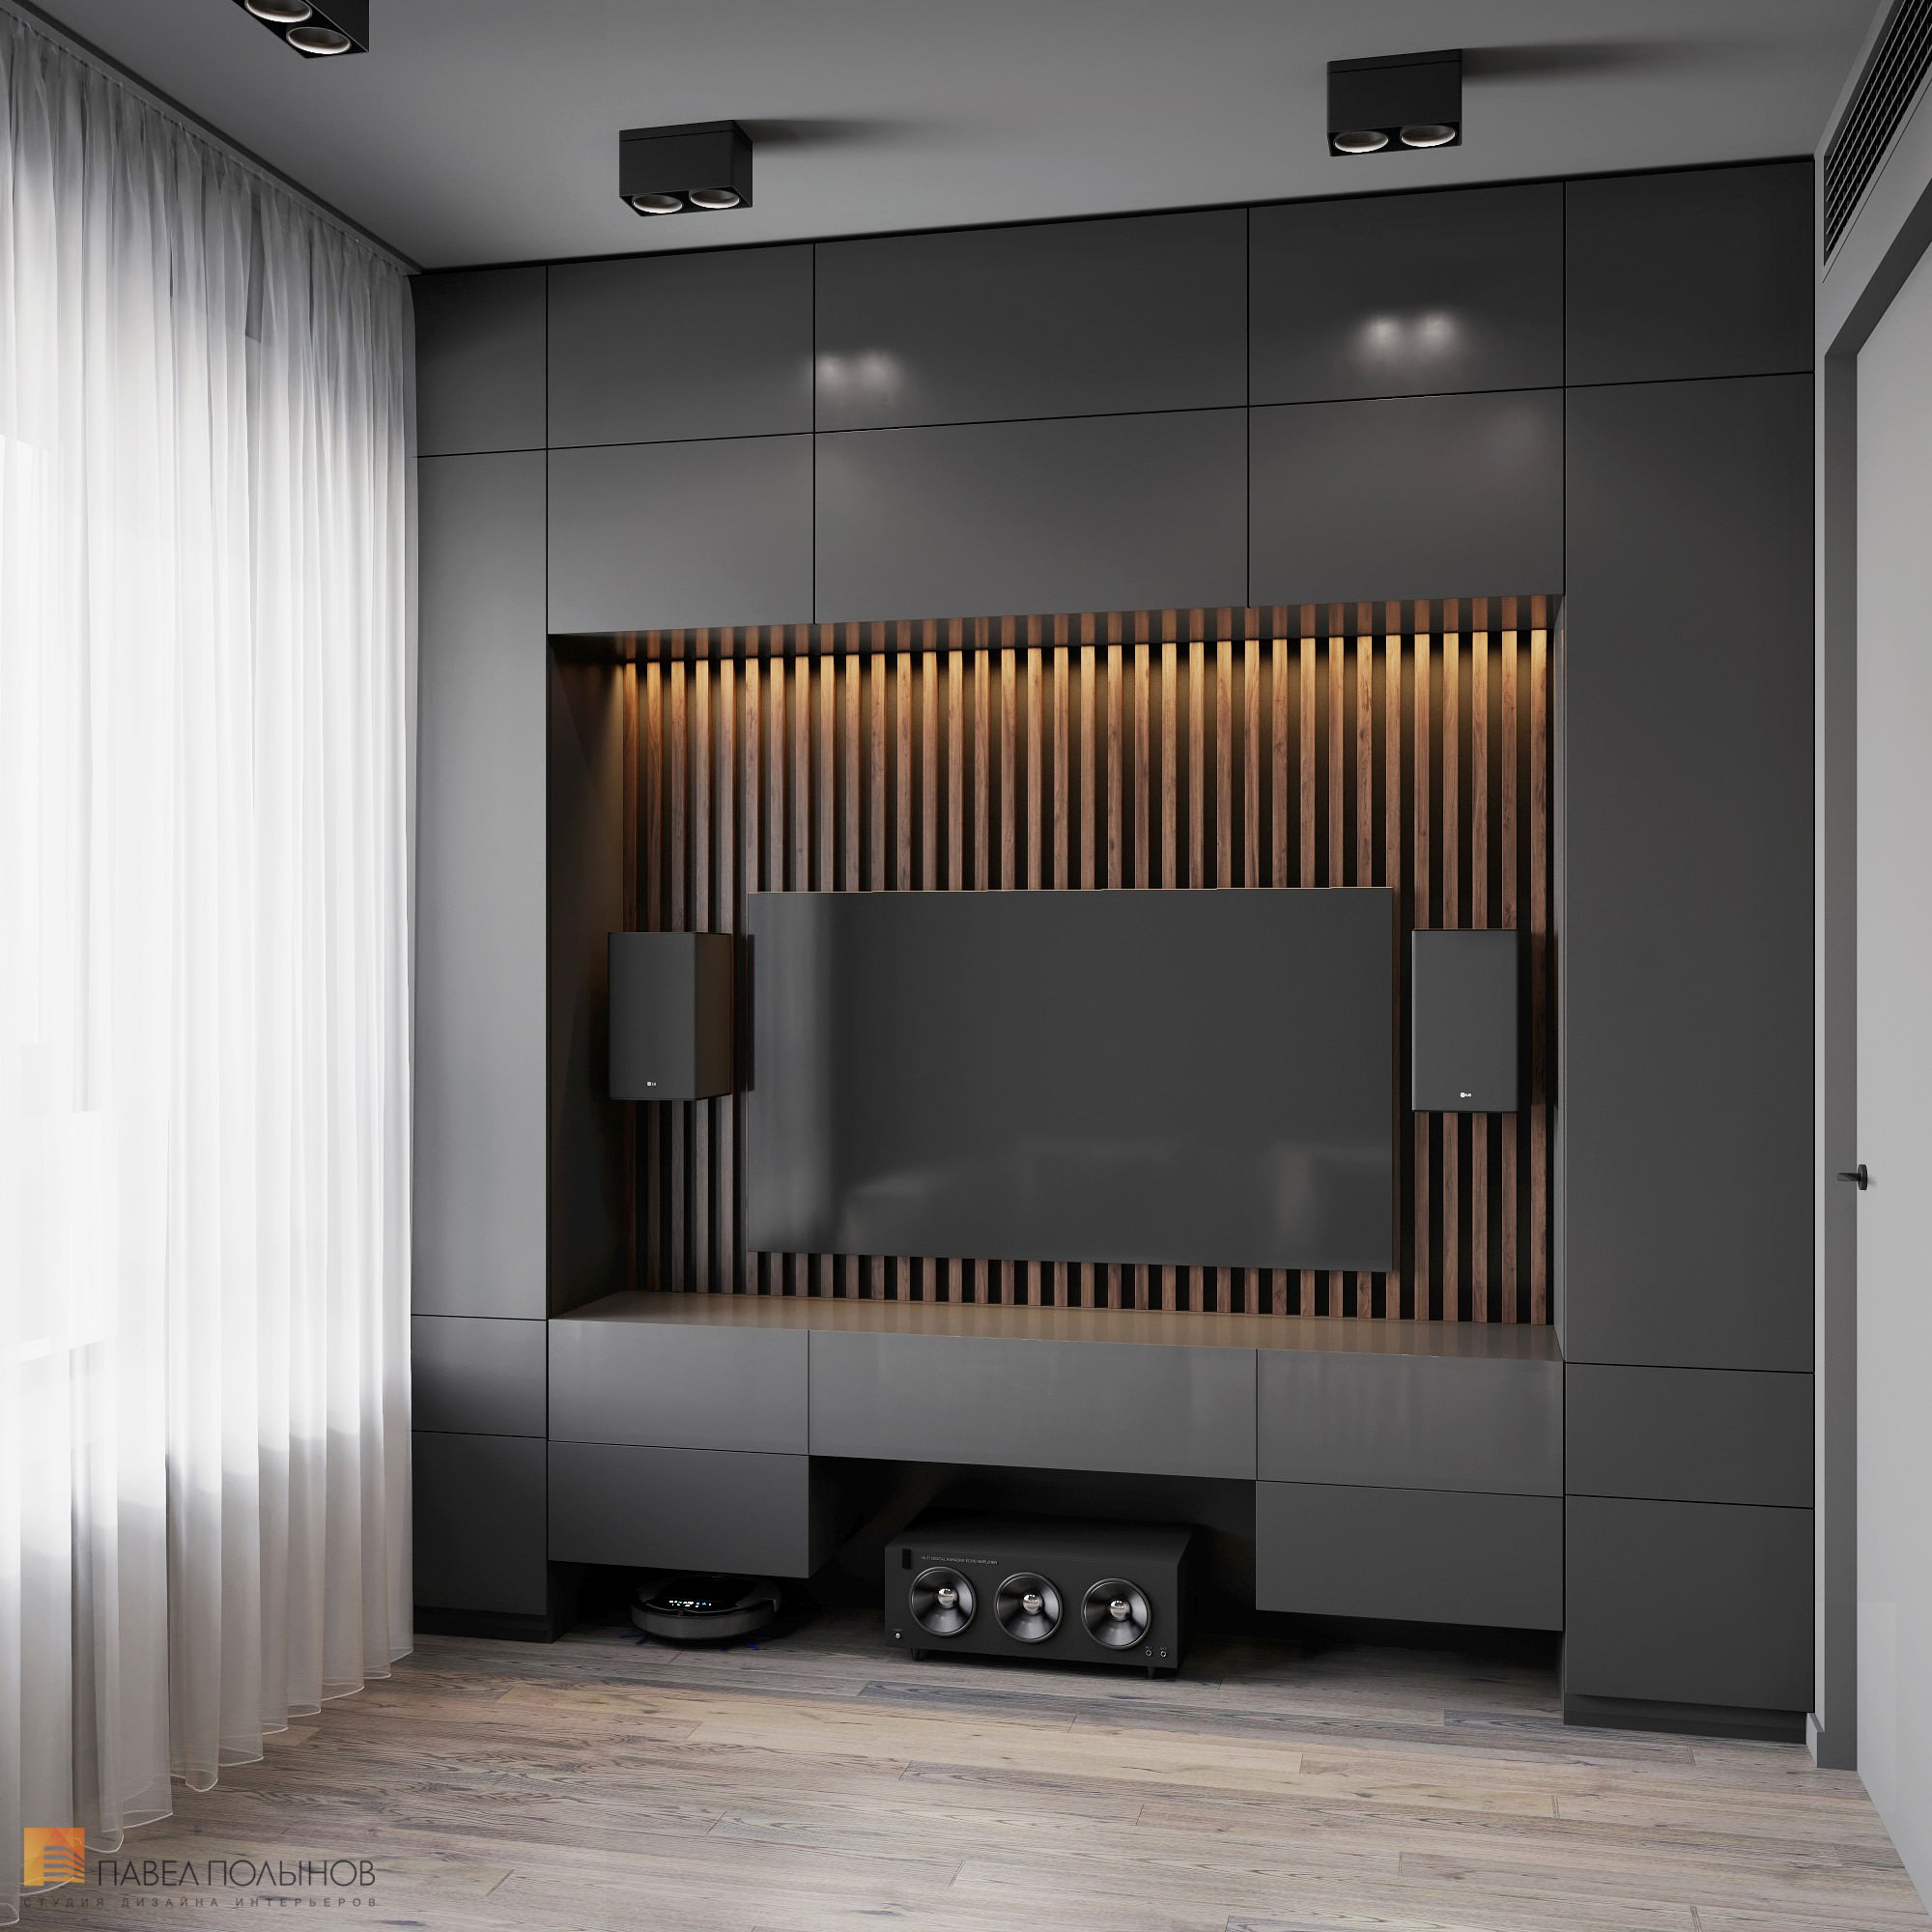 Фото дизайн интерьера гостиной из проекта «Интерьер квартиры в современном стиле, ЖК «Символ», 64 кв.м.»